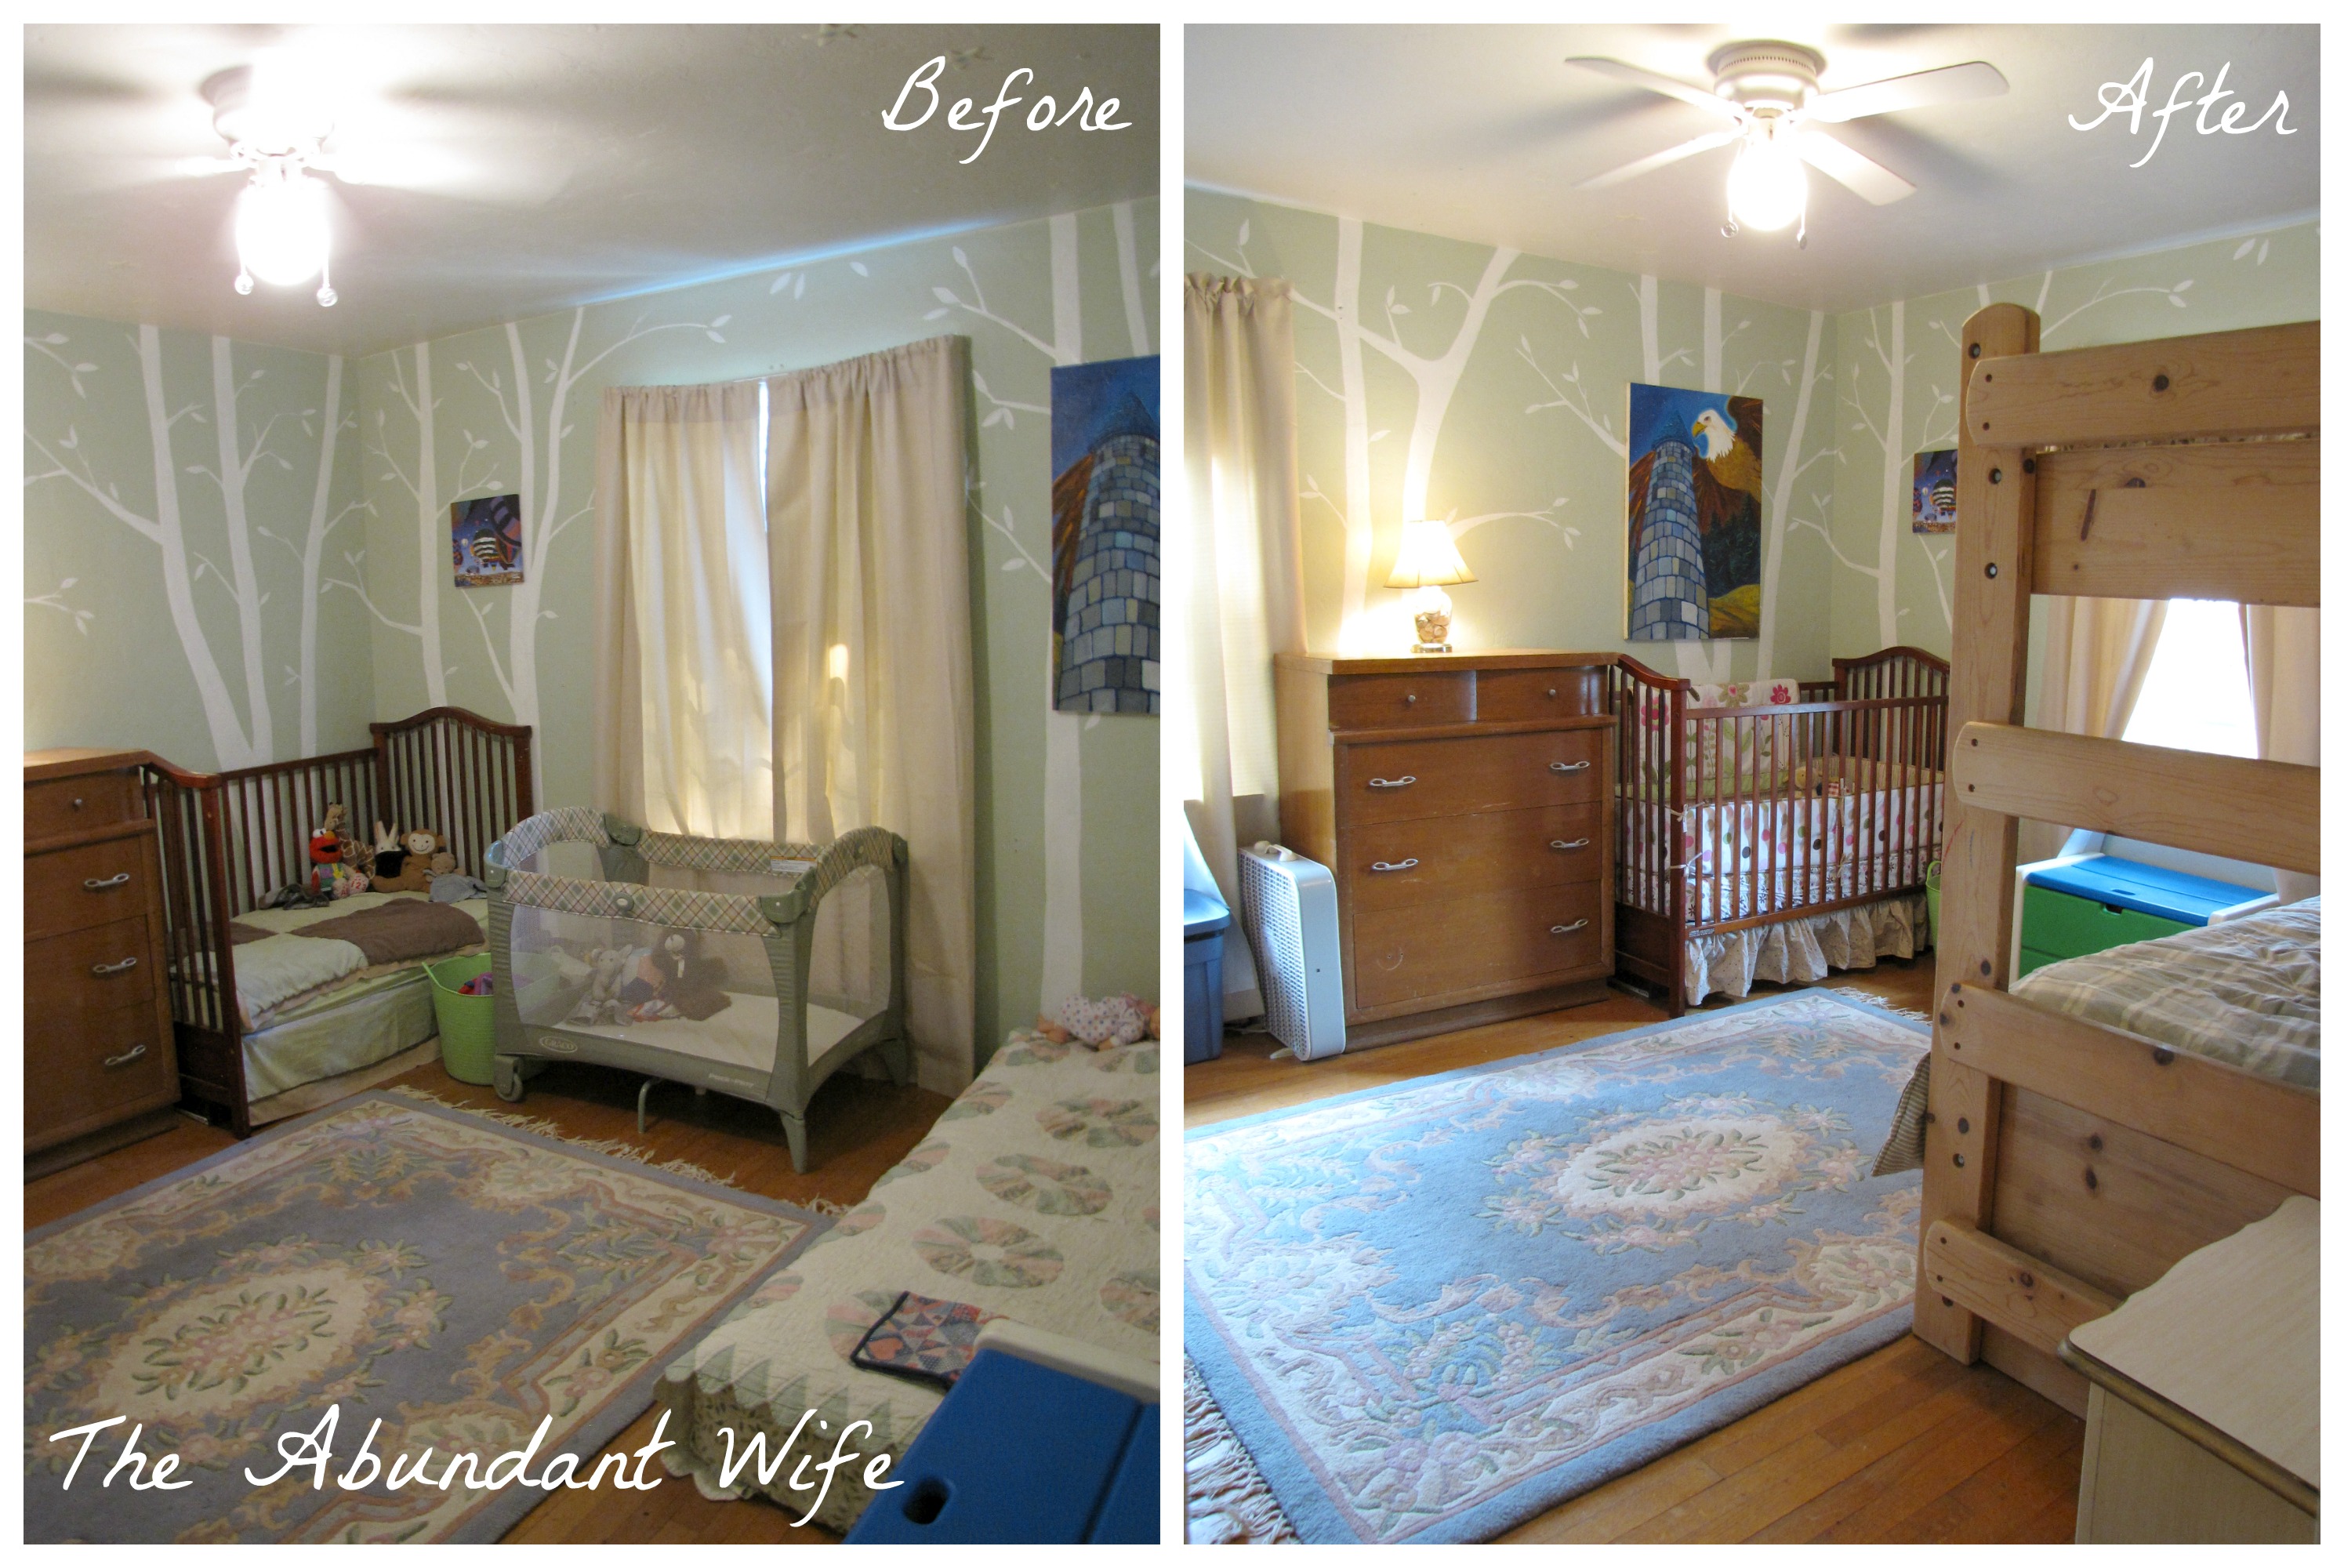 3 Kids In 1 Bedroom New Bunk Beds The Abundant Wife